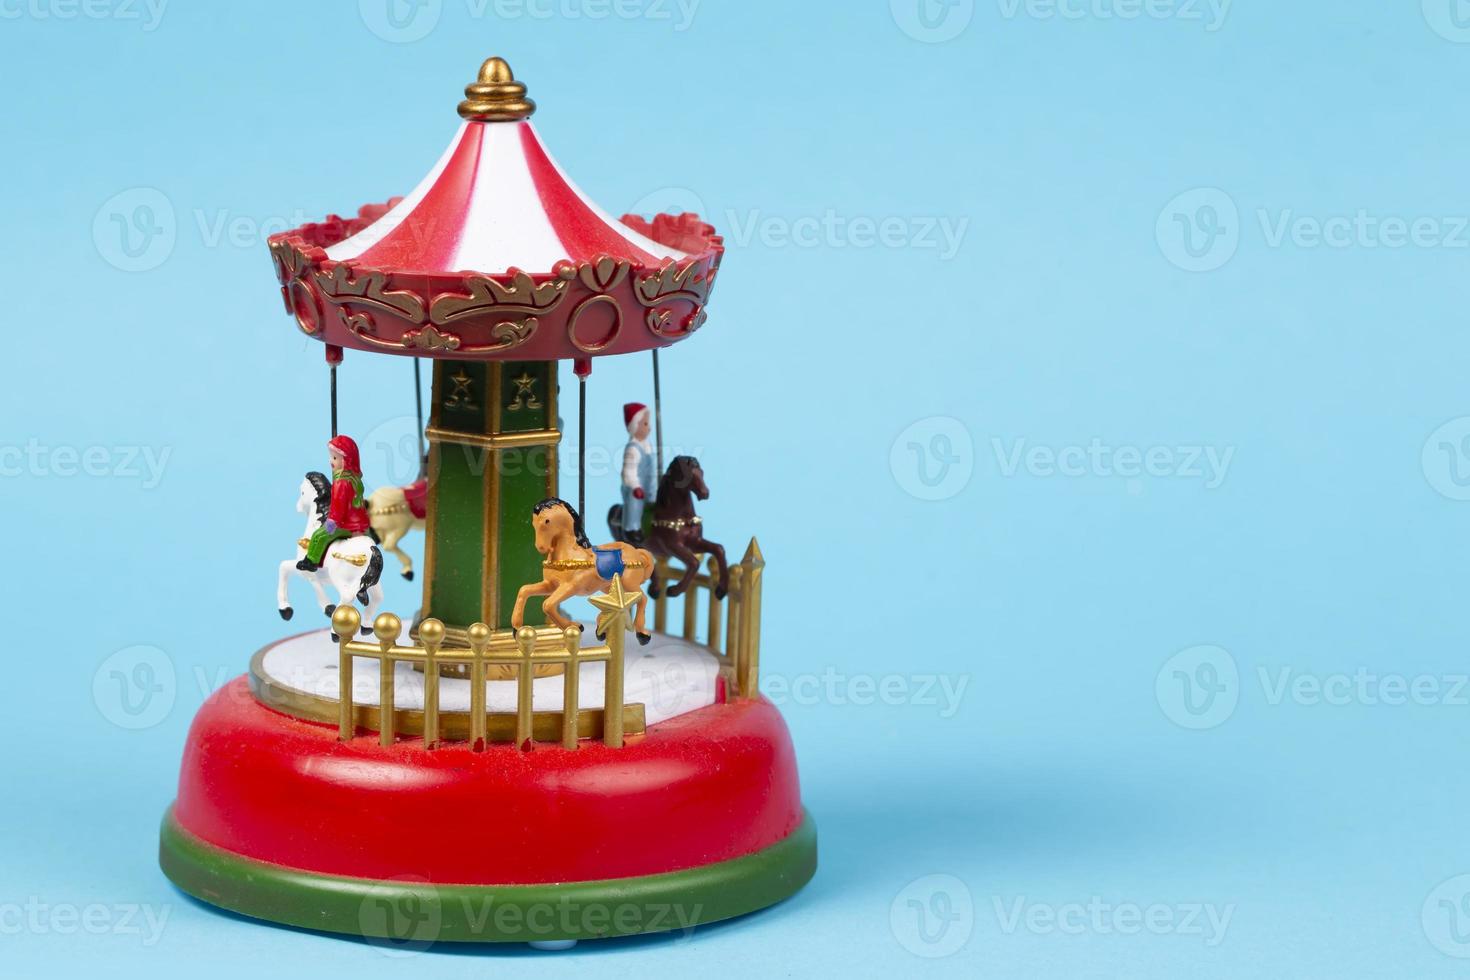 carrousel de jouets vintage sur fond bleu. carillon rouge avec carrousel, carrousel rétro photo